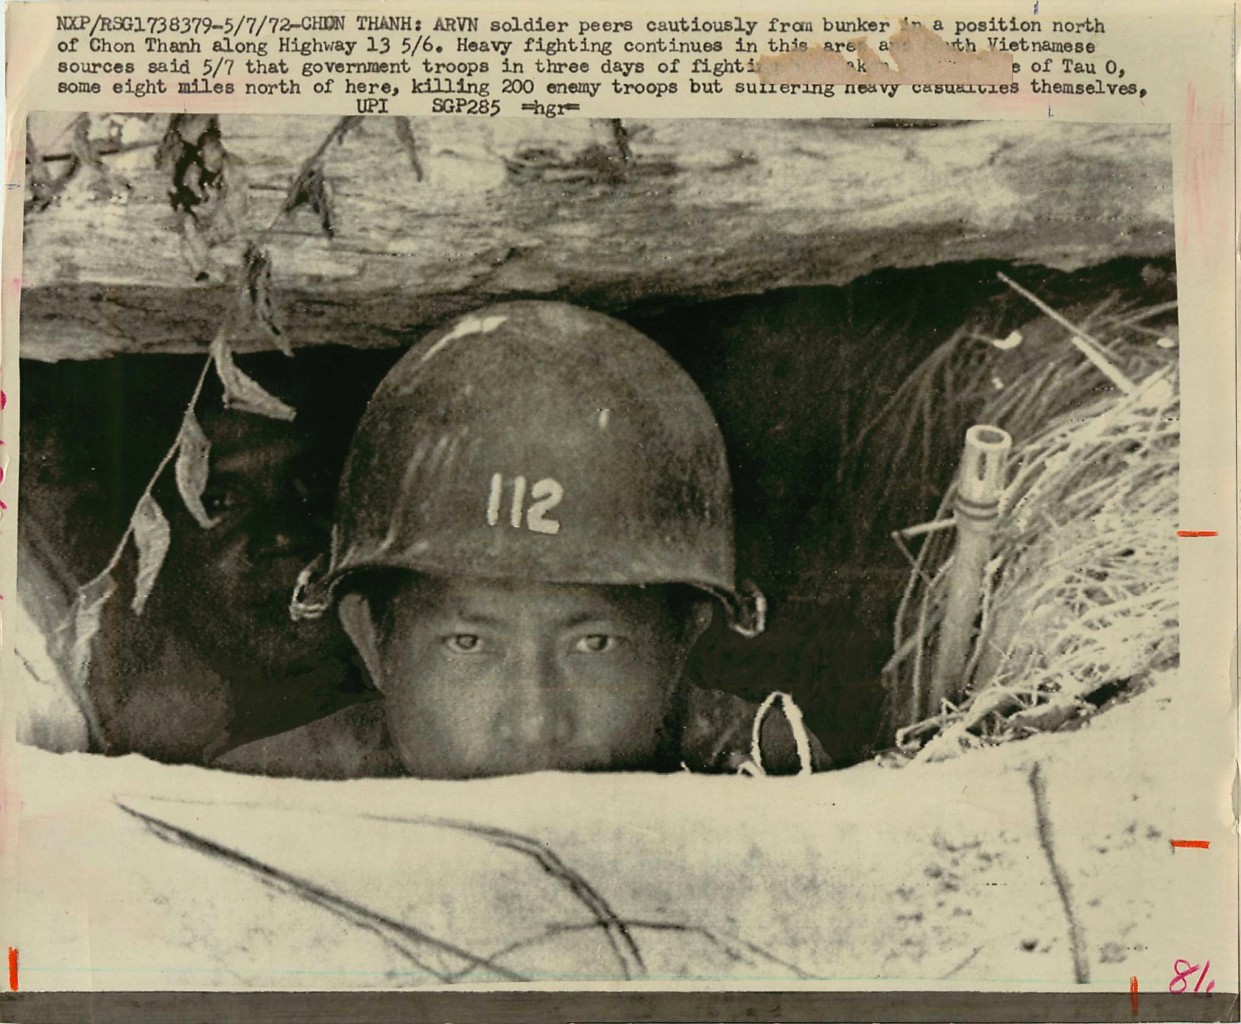 Les Images de la Guerre du Vietnam - Page 2 111219041721352309197803